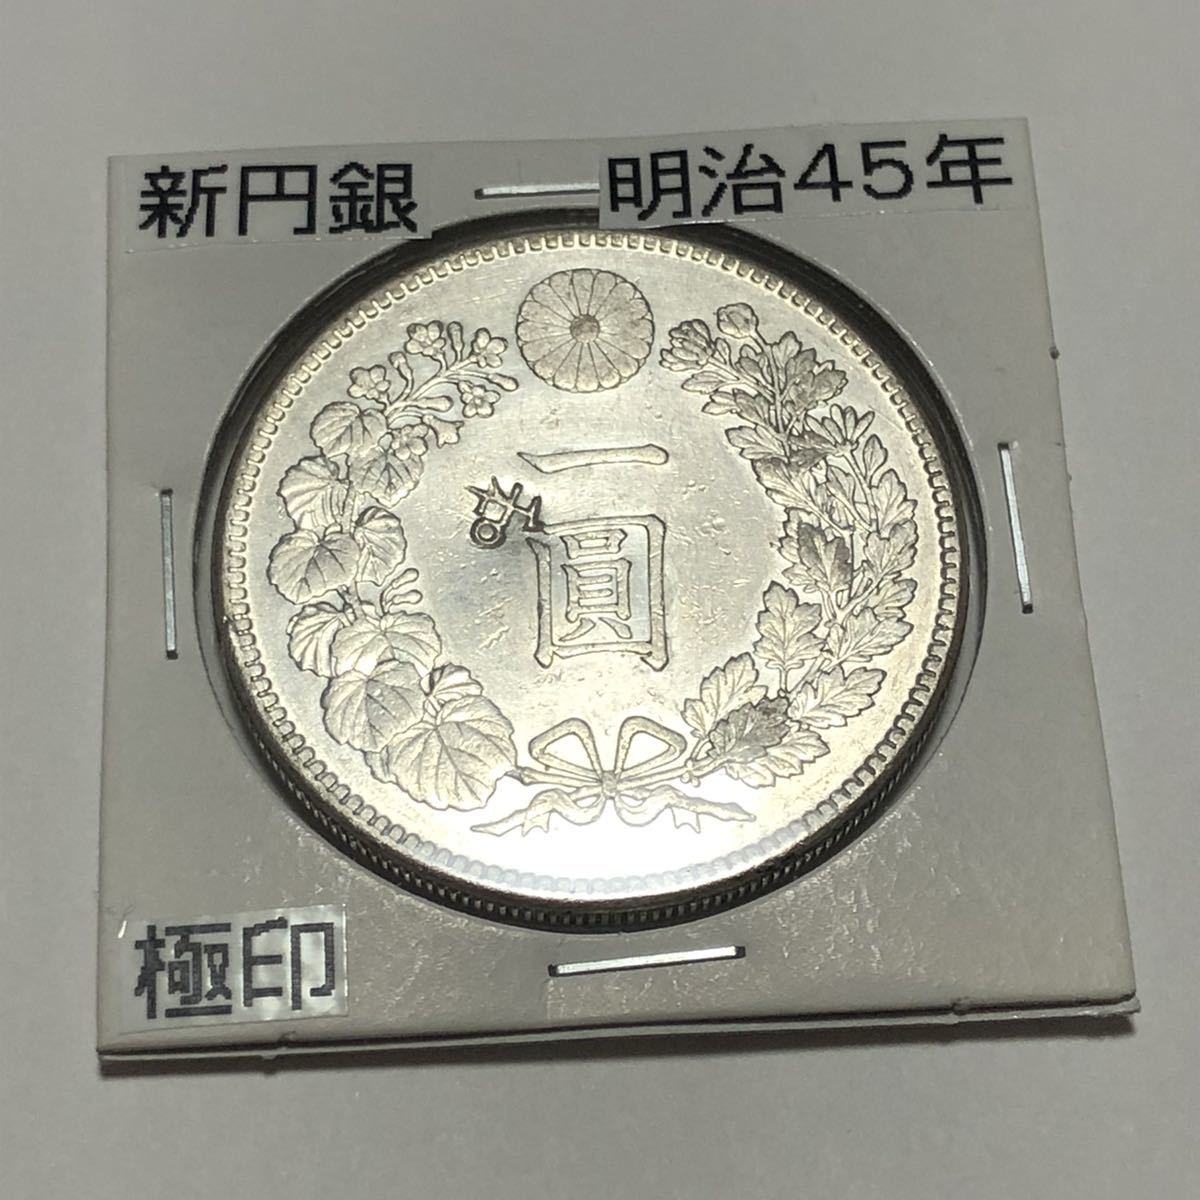 古銭 新1円銀貨 明治45年 極印打ち 一圓銀貨貿易銀 旧一圓銀貨 旧紙幣 